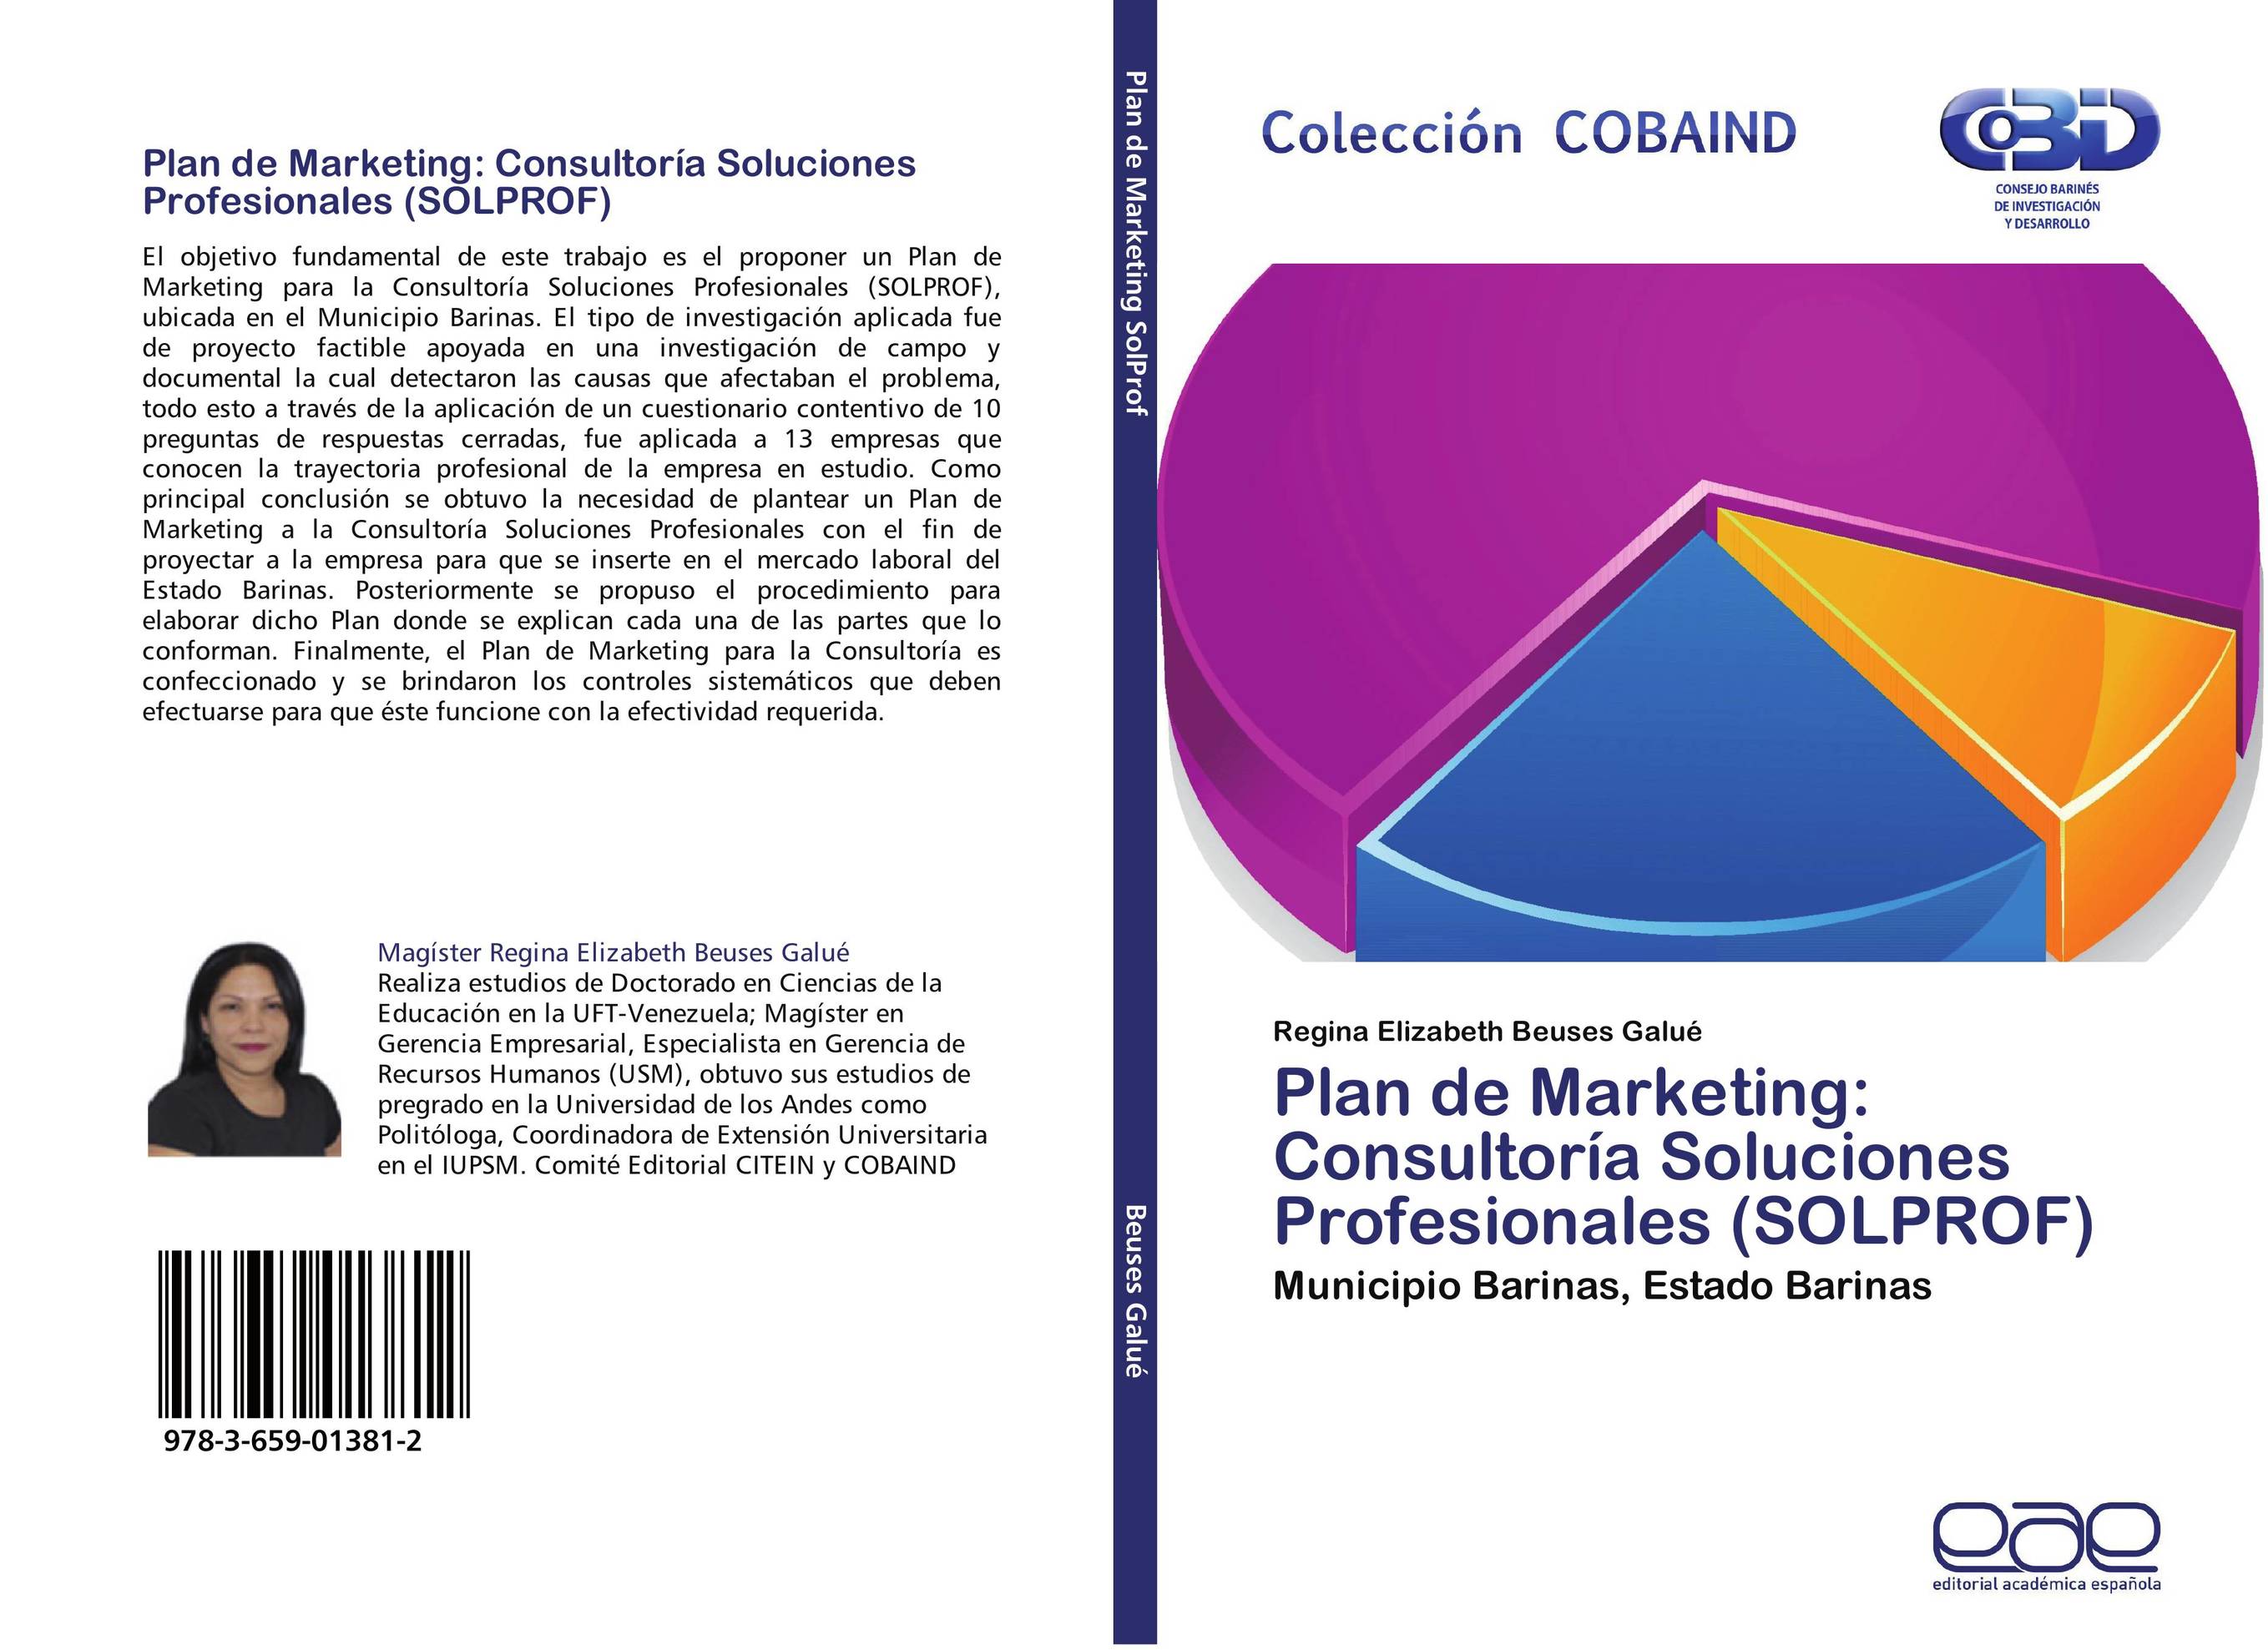 Plan de Marketing: Consultoría Soluciones Profesionales (SOLPROF)